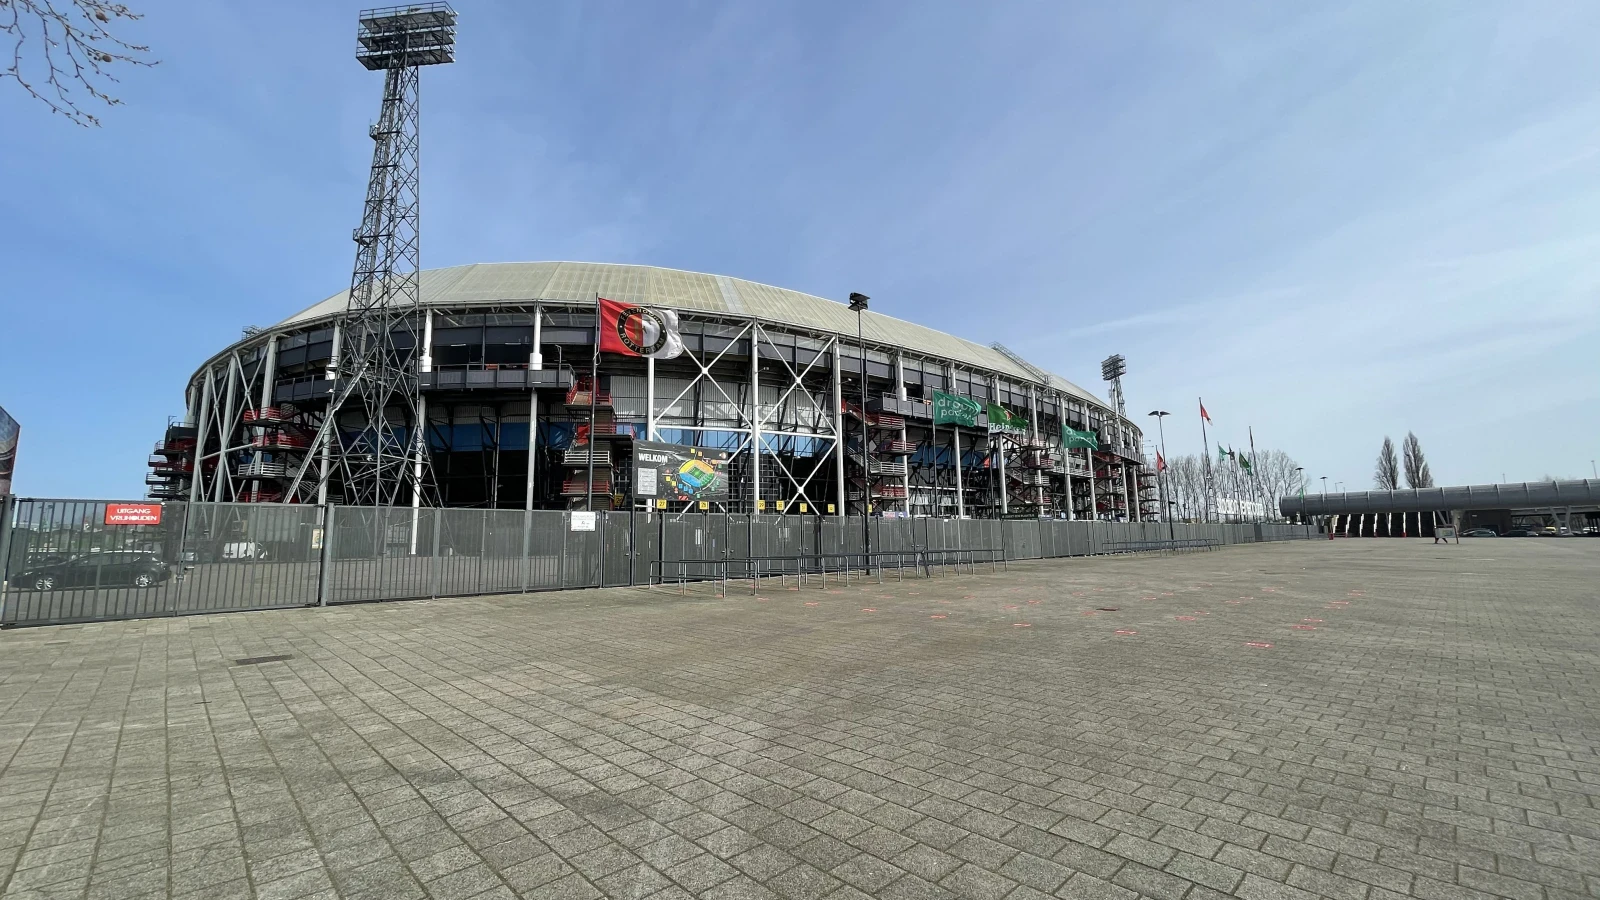 Knaken de nieuwe Crypto Partner van Feyenoord